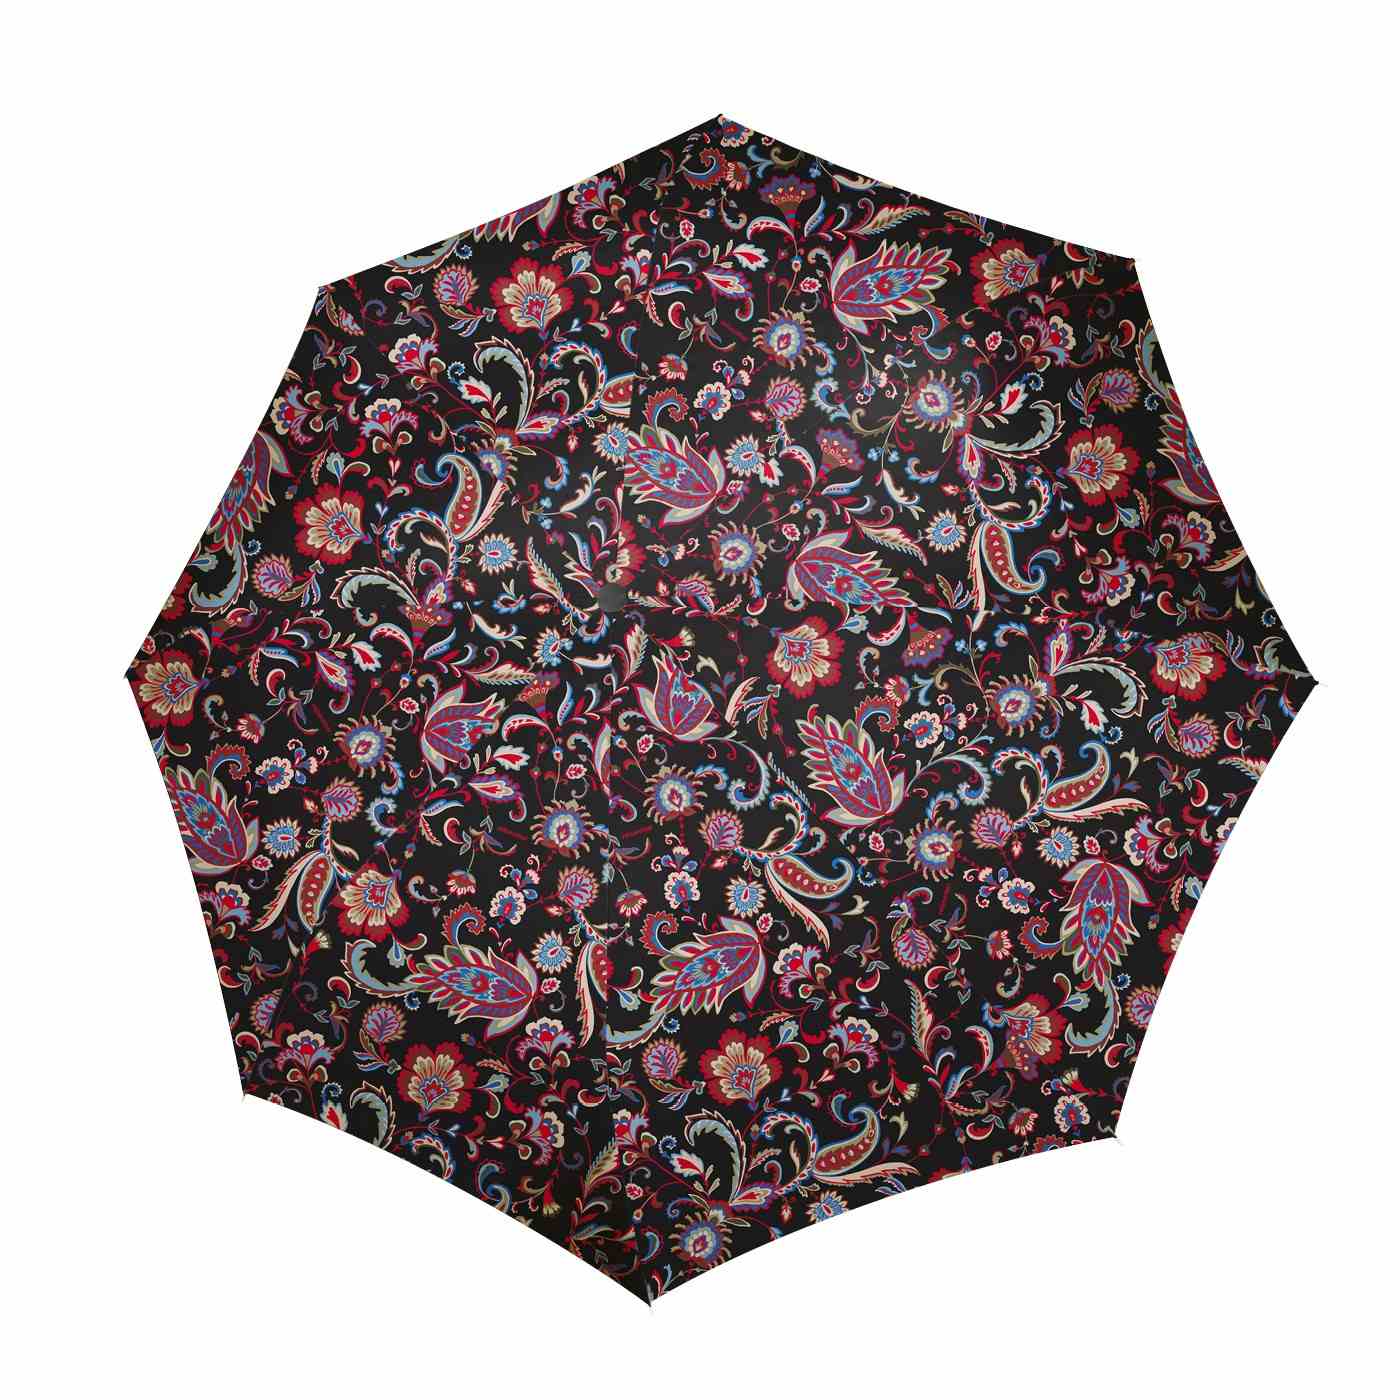 Deštník Reisenthel Umbrella Pocket Duomatic Paisley black